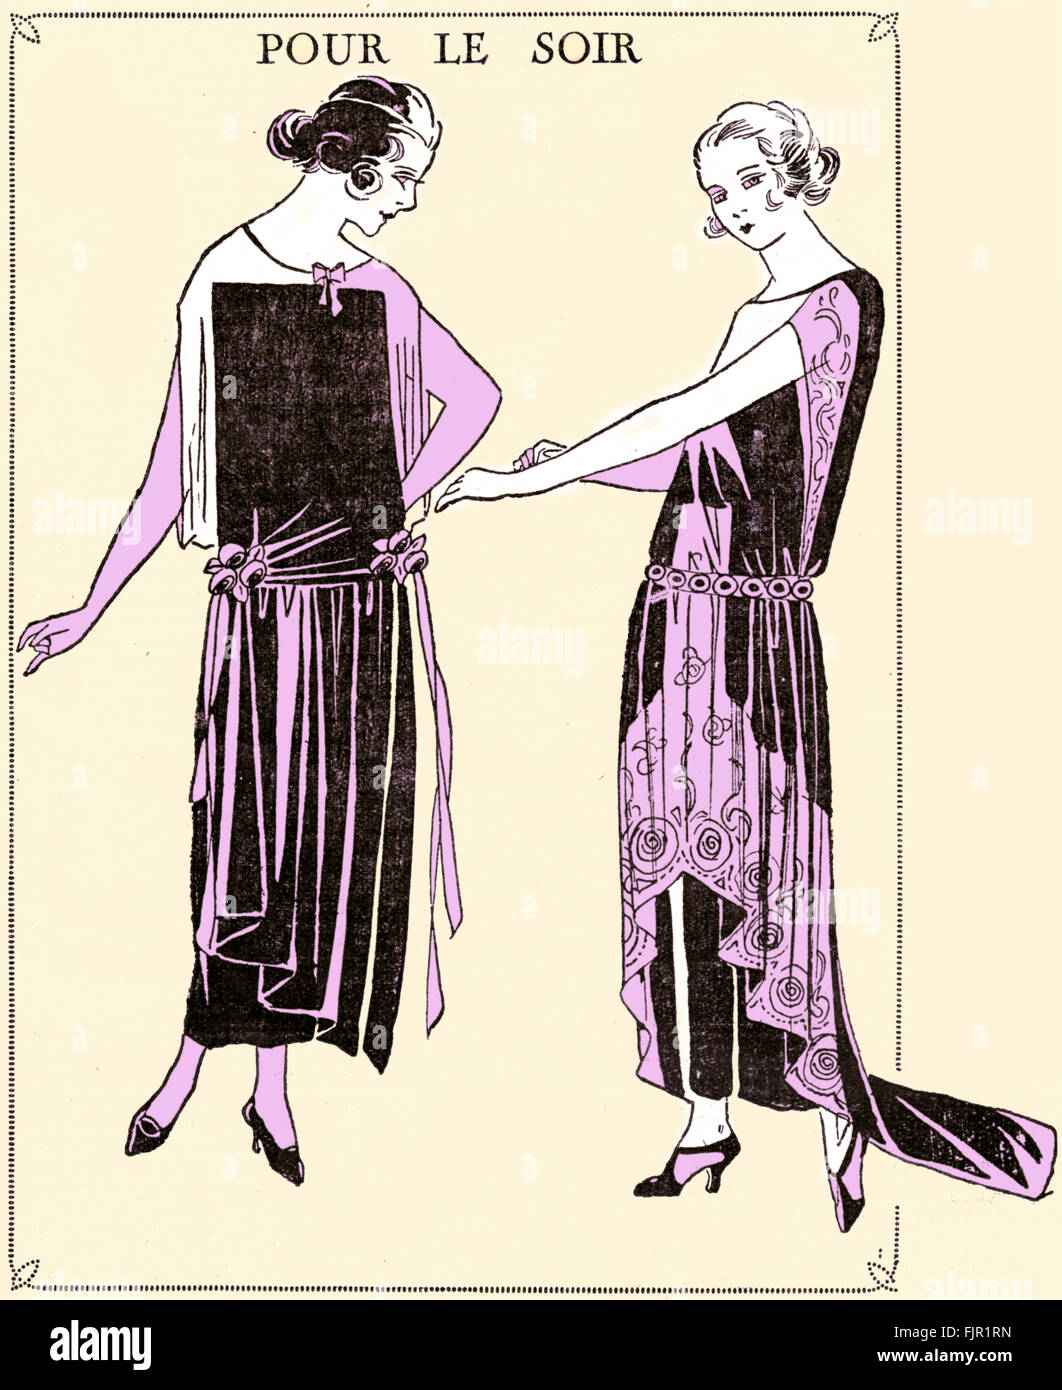 Französische Mode der 1920er Jahre: Abendgarderobe. Veröffentlicht in Le Petit Echo De La Mode, 1922. Französische Mode-Magazin. Stockfoto